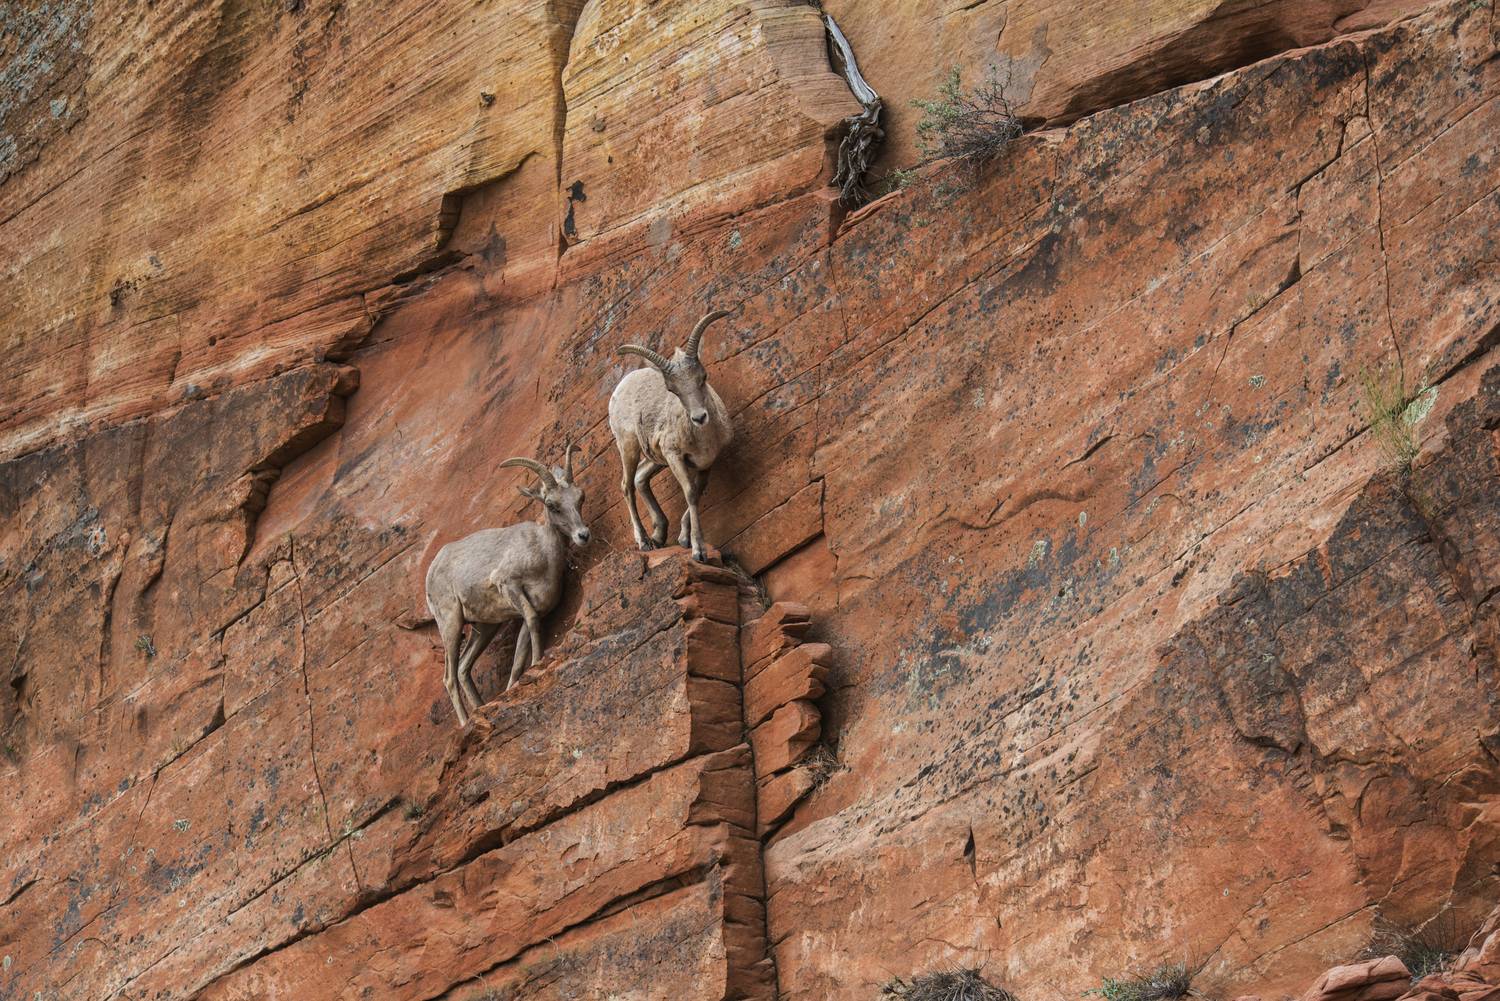 A hegyi kecskék izomzata rendkívül erős és rugalmas. Ez segíti őket abban, hogy a meredek sziklafalról se essenek le. A fotó a Zion Nemzeti Parkban készült.